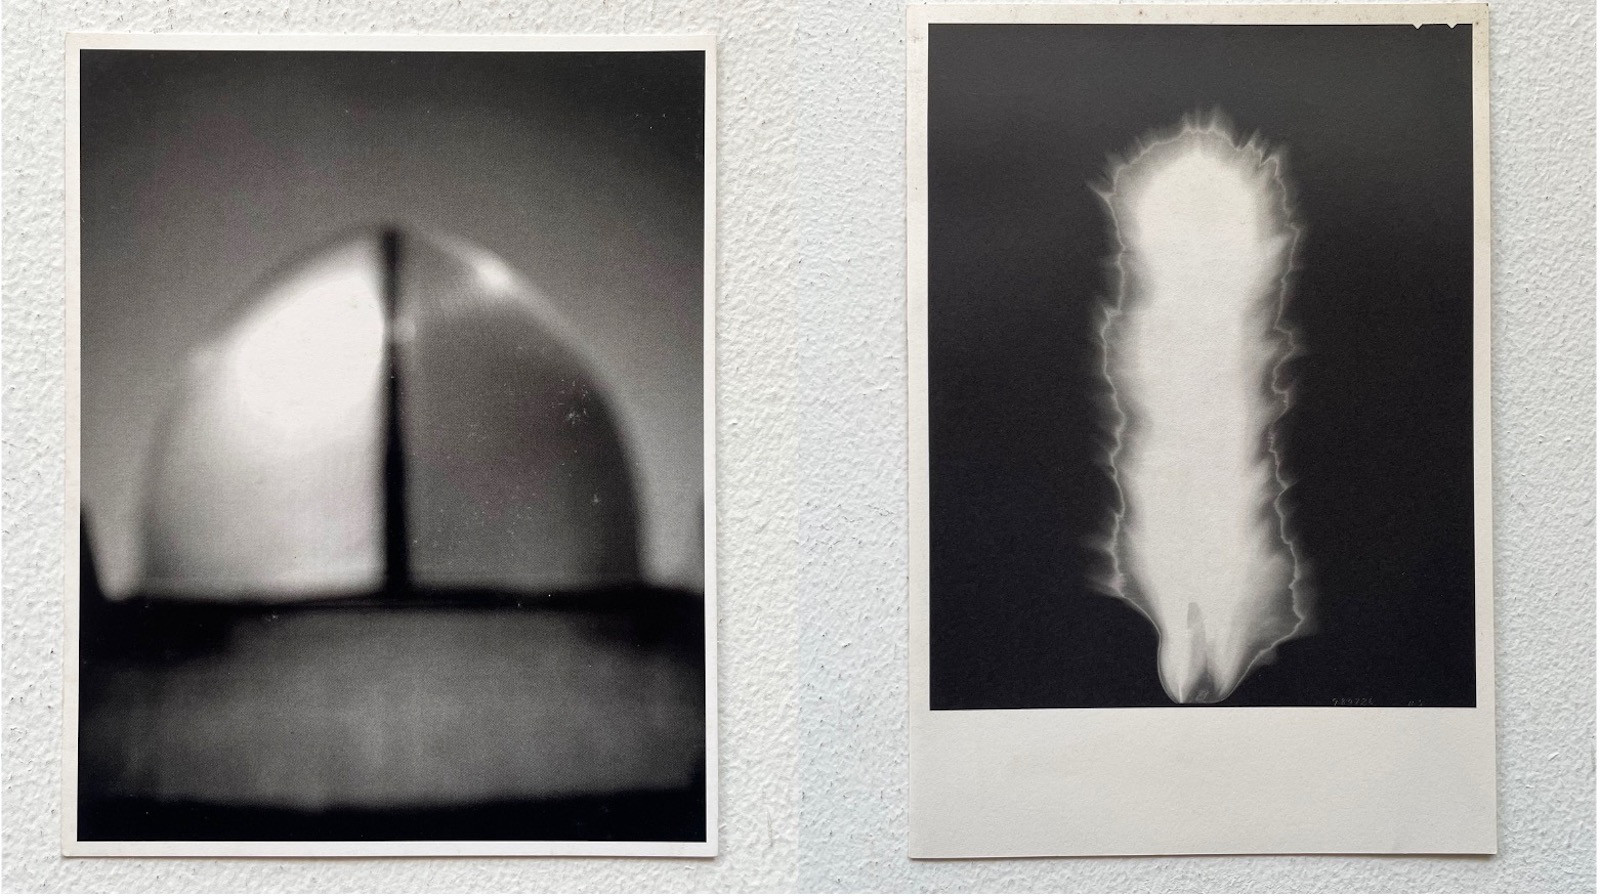 左：1998年、ニューヨークのSONNABEND GALLERYでの個展。「建築」シリーズの展示。右：1998年、ギャラリー小柳での「HIROSHI SUGIMOTO IN PRAISE OF SHADOWS」展。このシリーズは現代美術センターCCA北九州から作品集が出版されている。